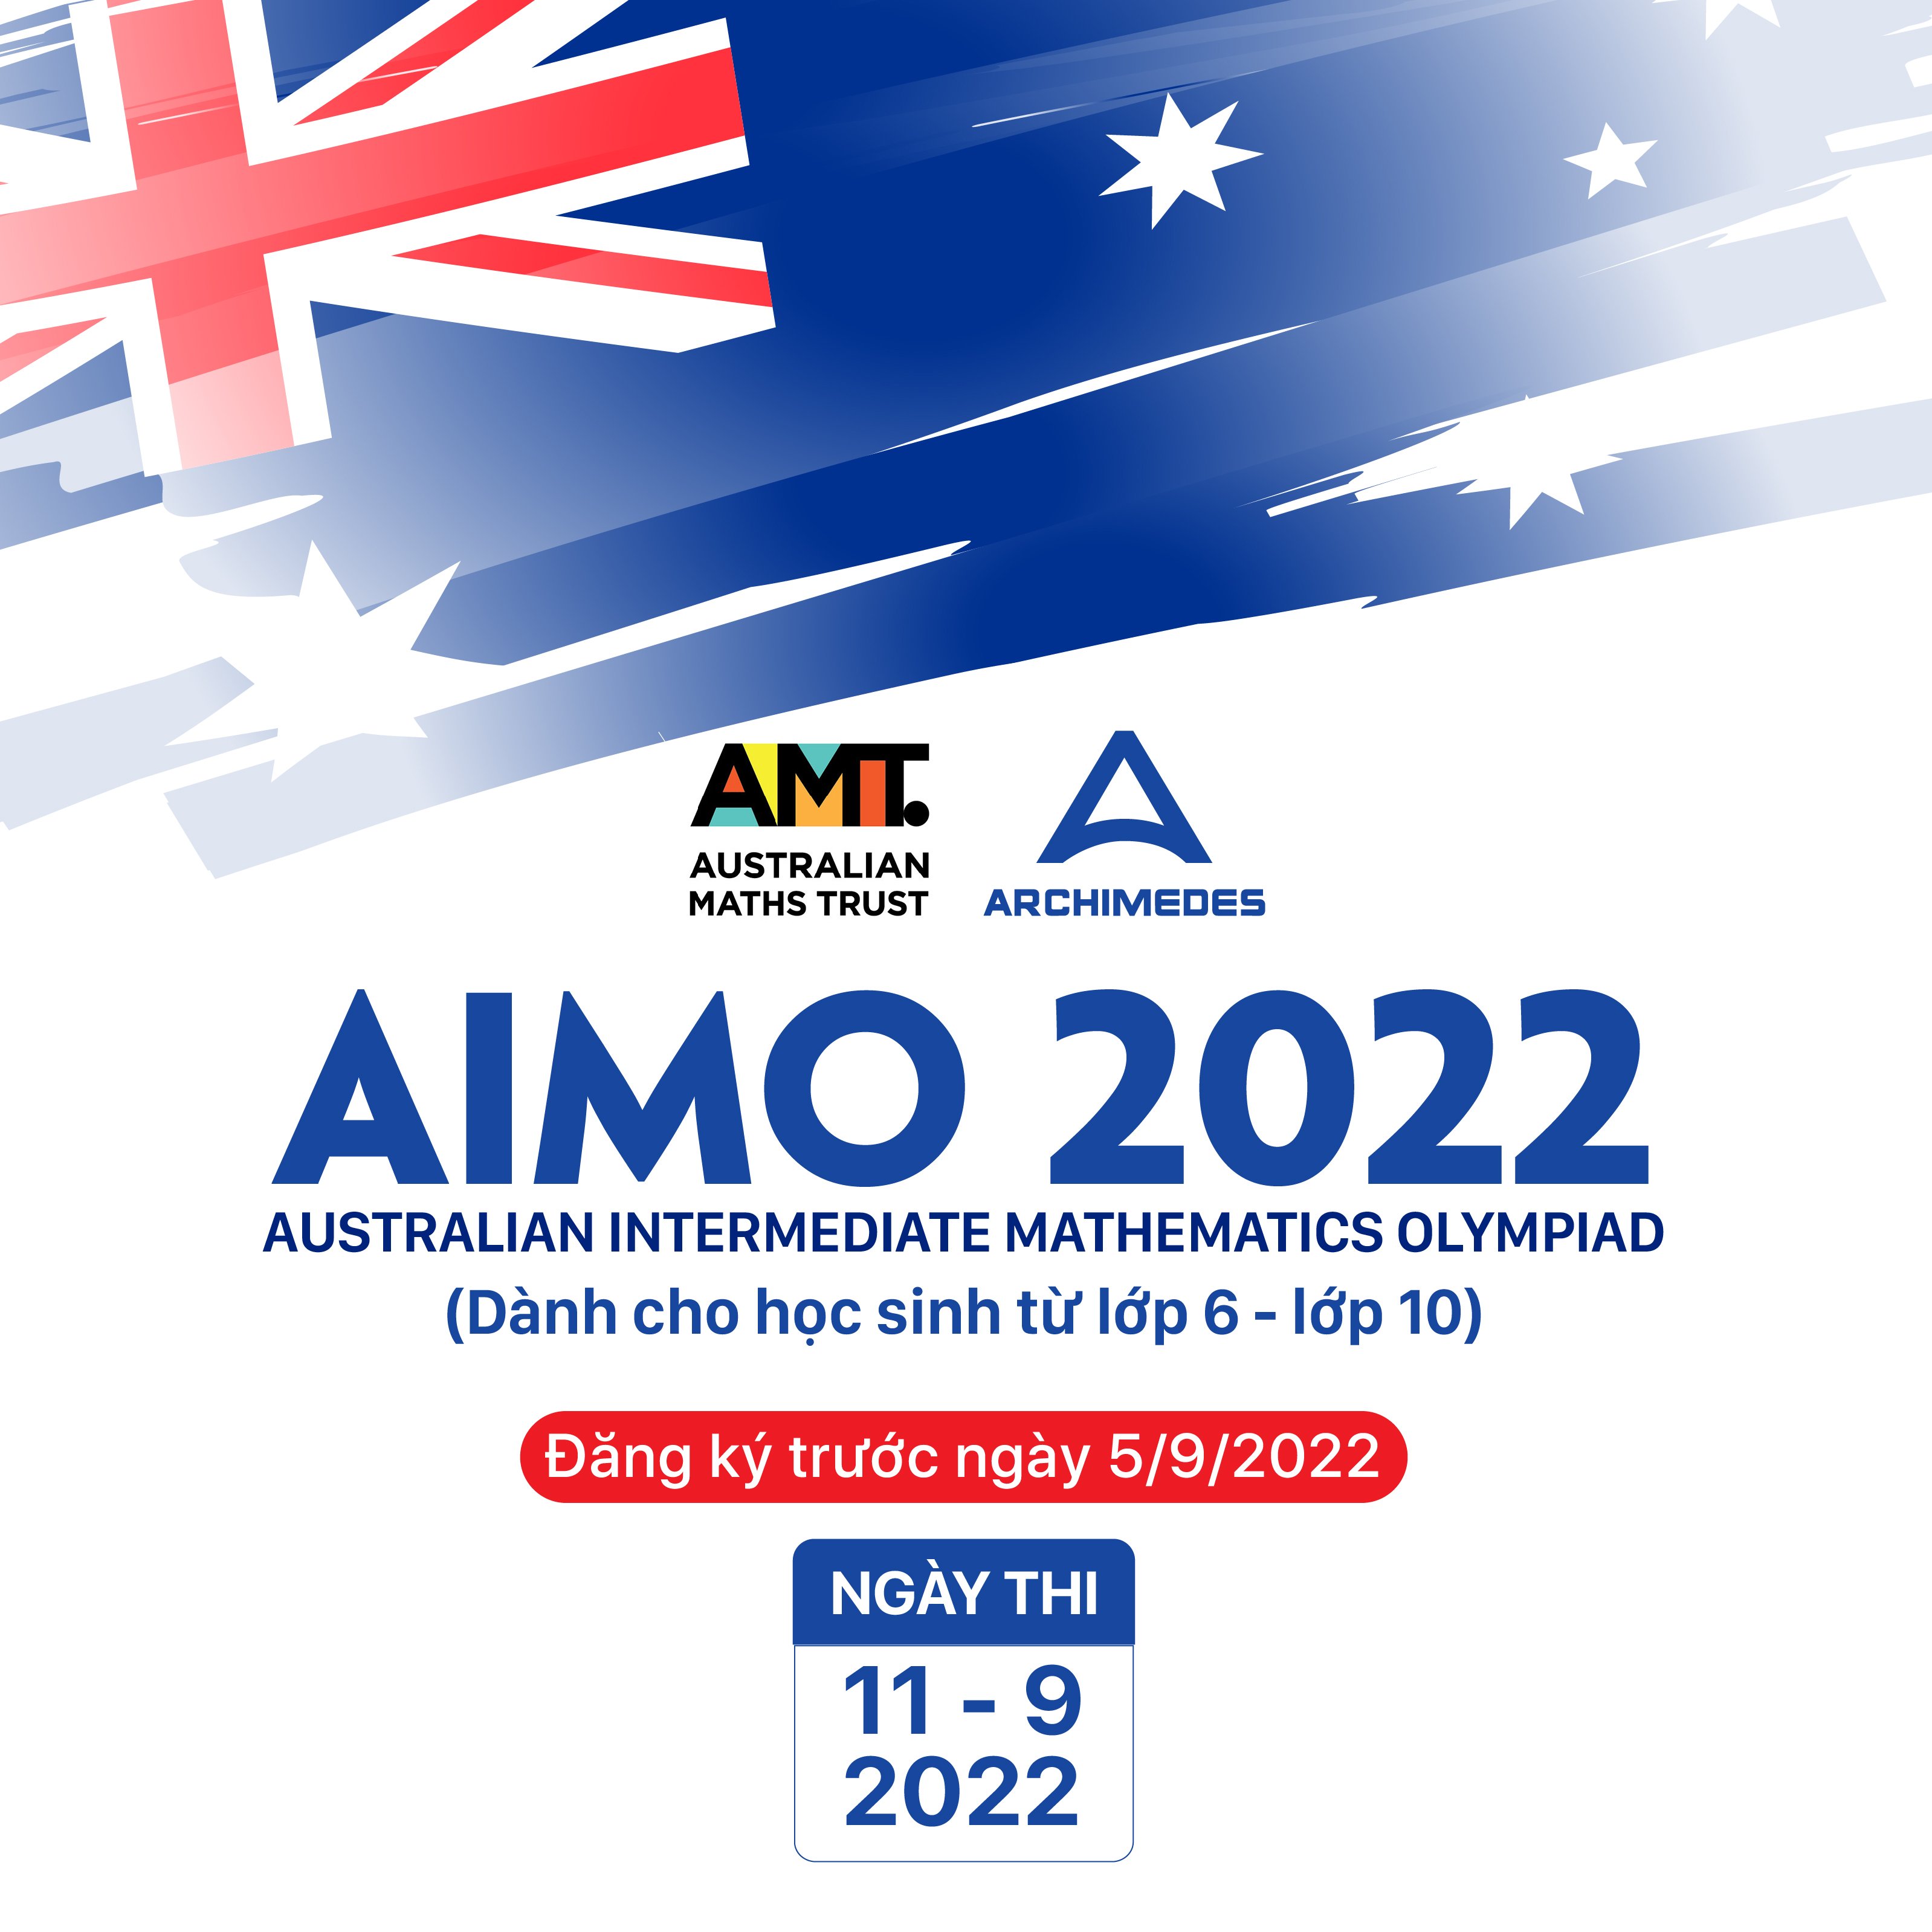 Thông báo về Cuộc thi Vô địch Toán cấp Trung học Úc mở rộng - AIMO 2022